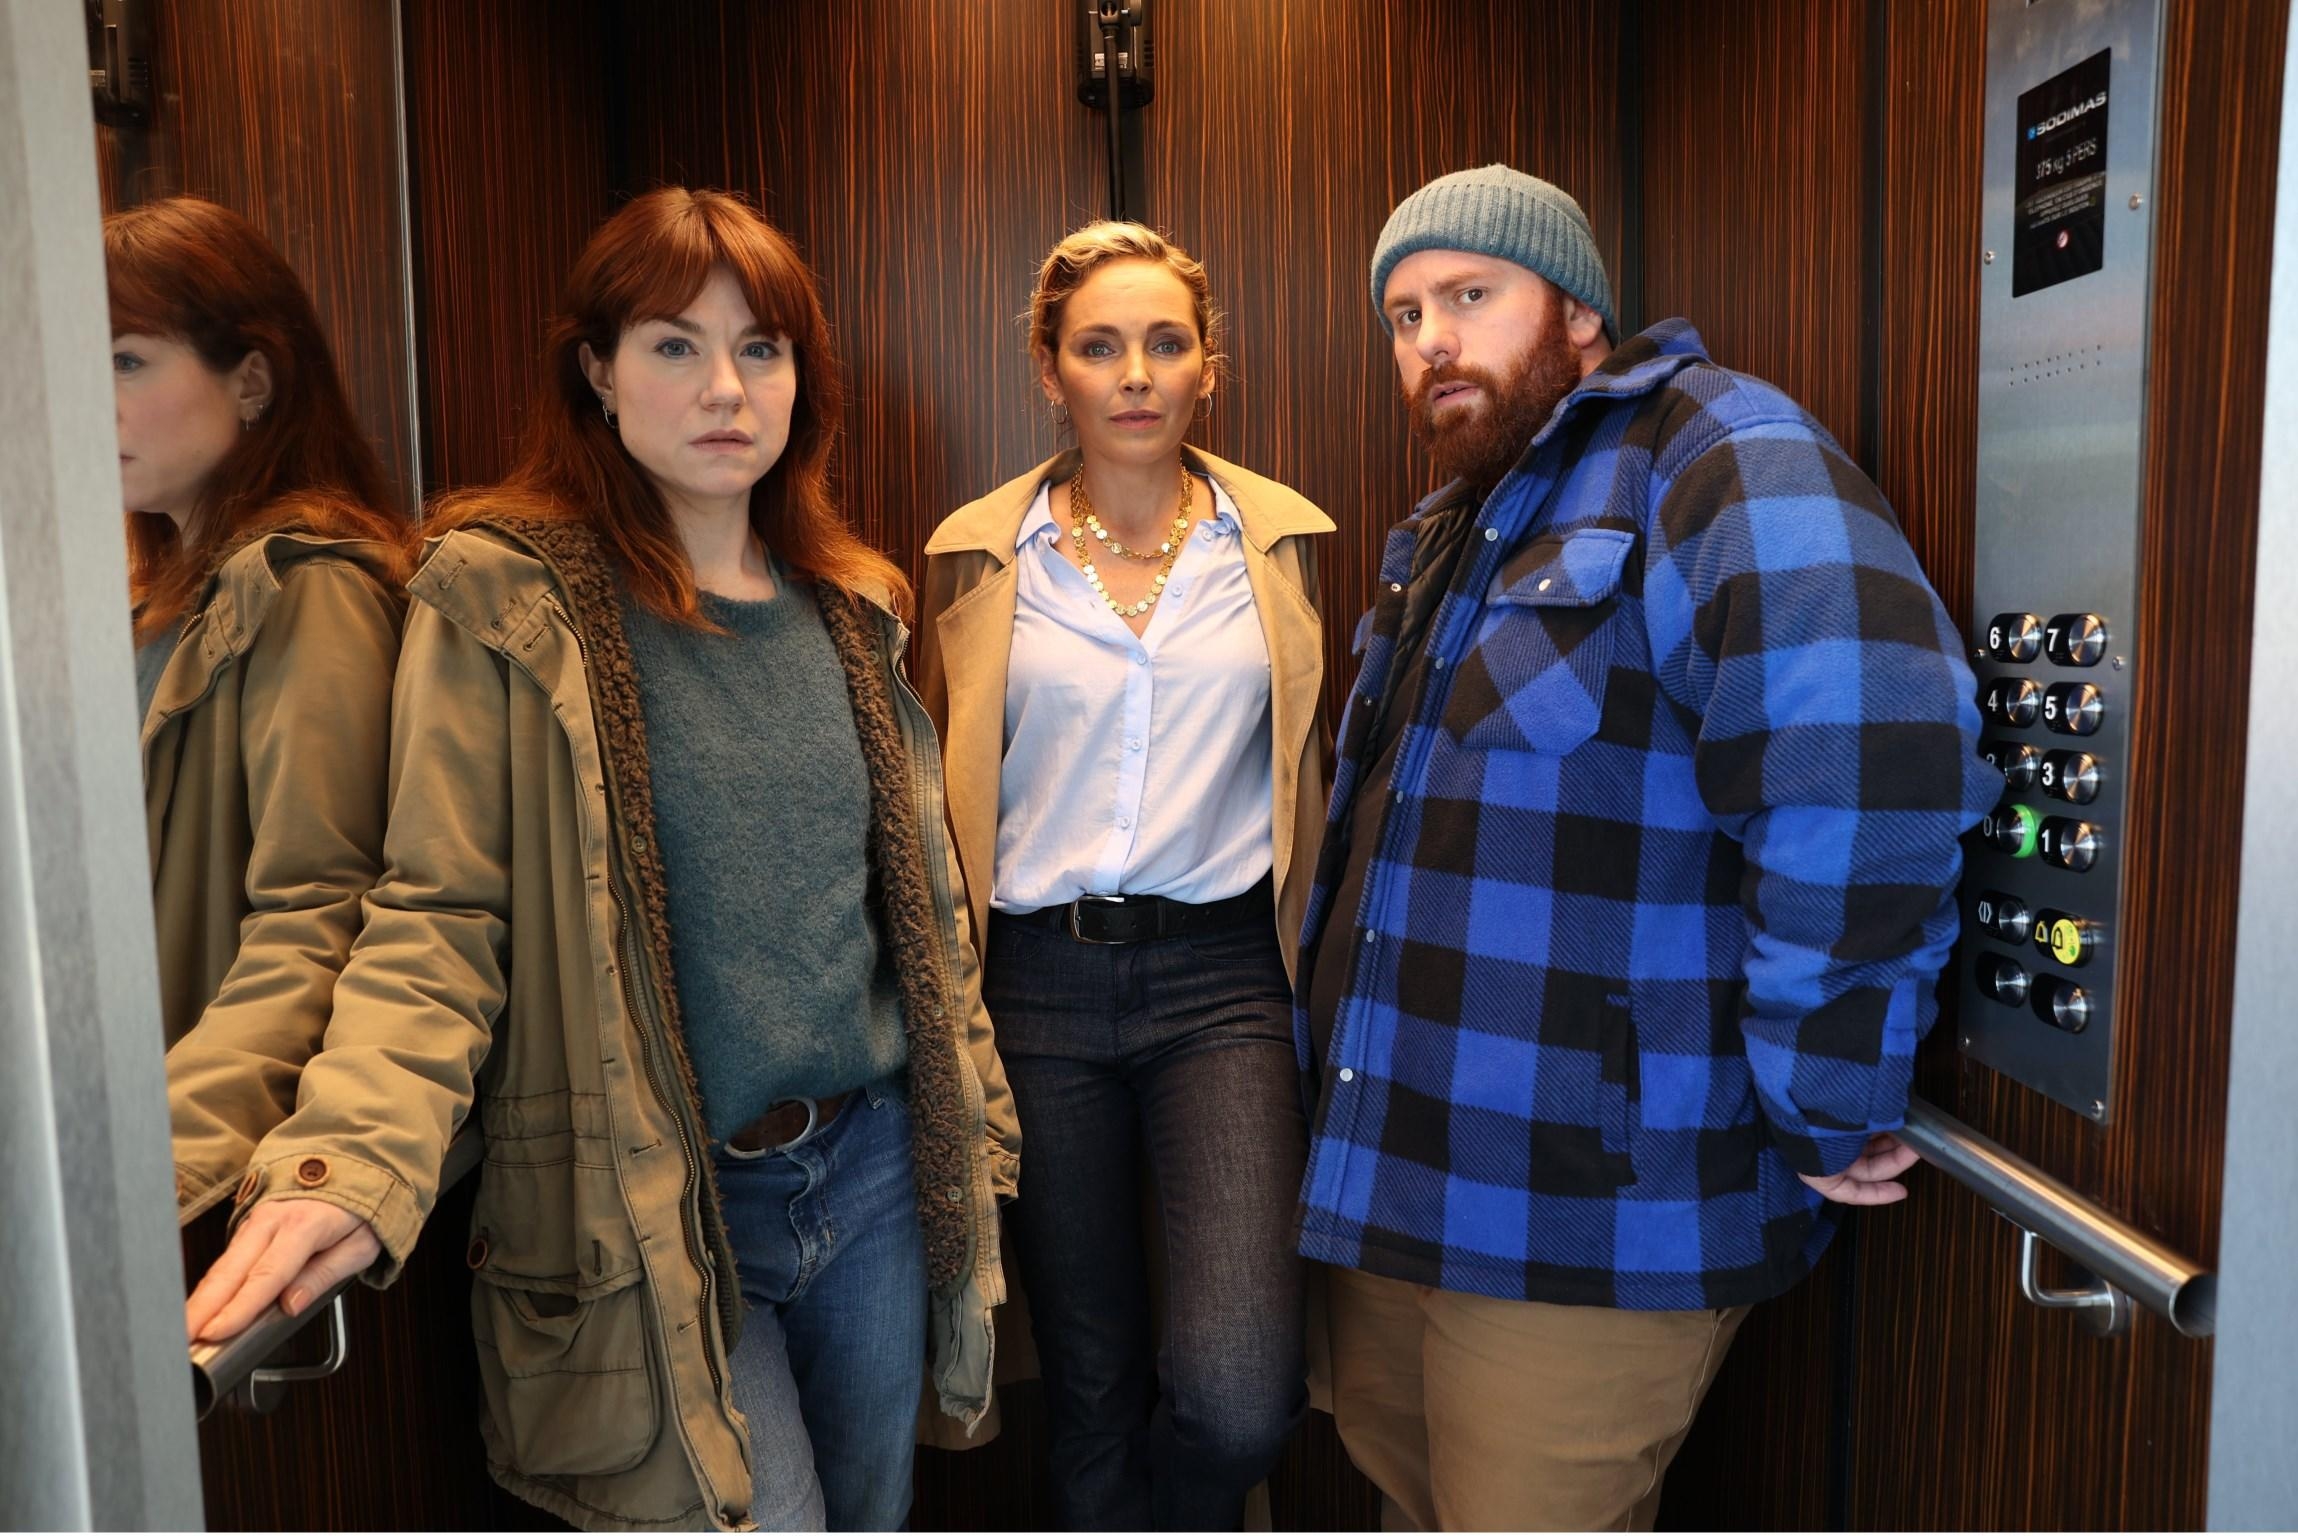 Juliette (Émilie Dequenne), Anna (Claire Keim) et Cédric (Marc Riso) sont renvoyés un an en arrière en prenant cet ascenseur. Assez pour éviter les meurtres qui vont avoir lieu dans l'hôpital ? PWARRIN/MERLINPRODUCTION/M6